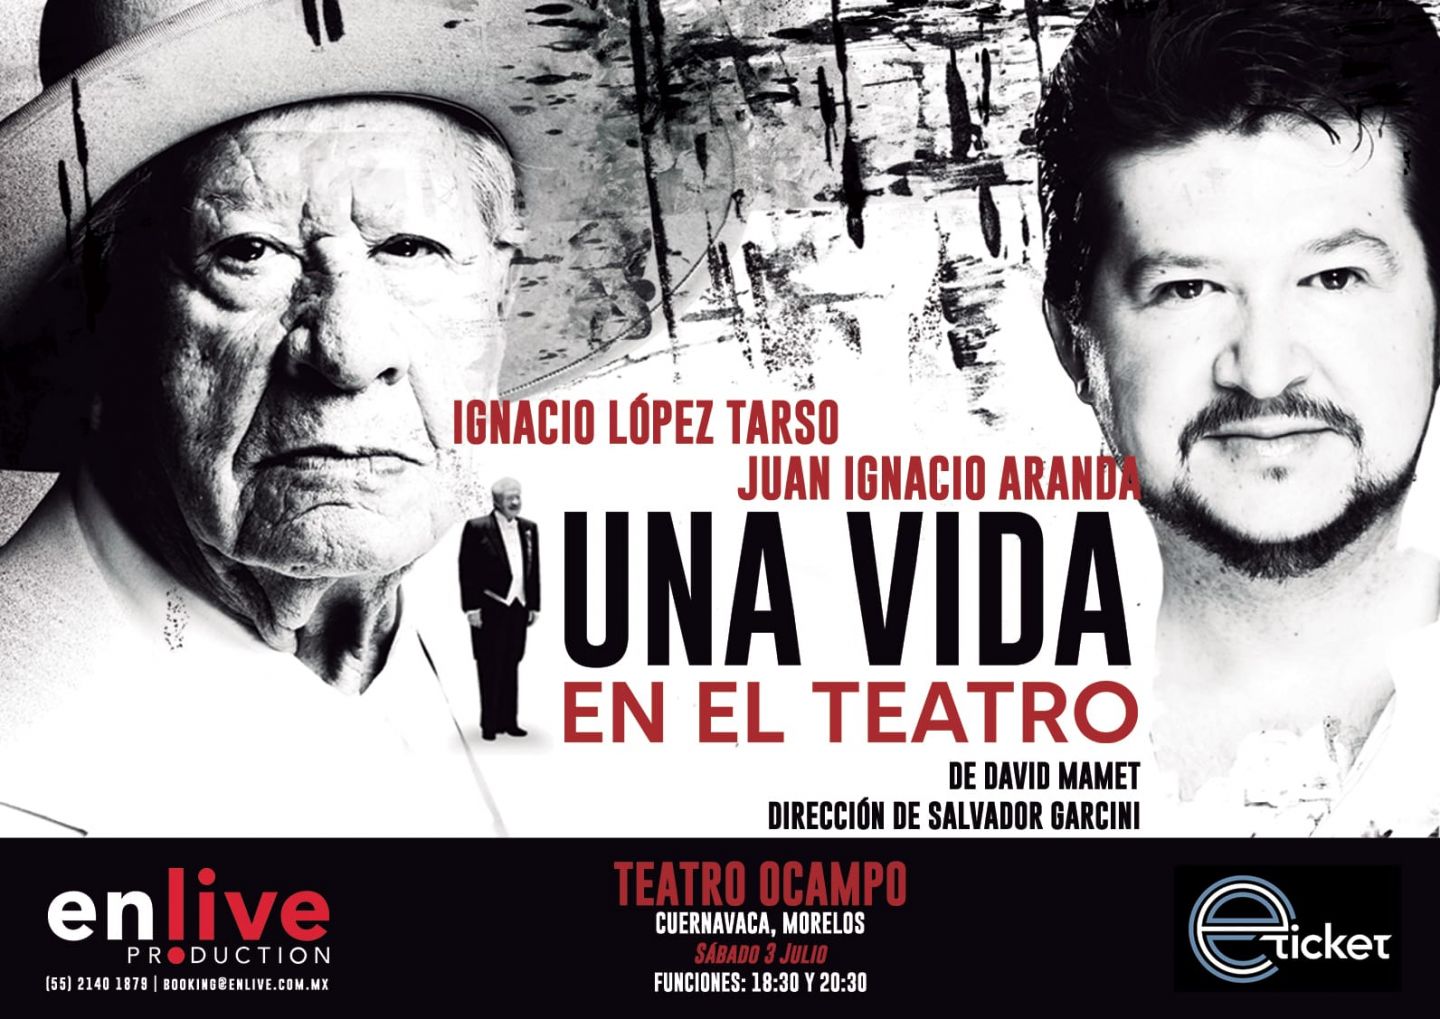 Ignacio López Tarso festeja 70 años de trayectoria con la Obra ’Una  Vida en el Teatro’ de  David Mamet